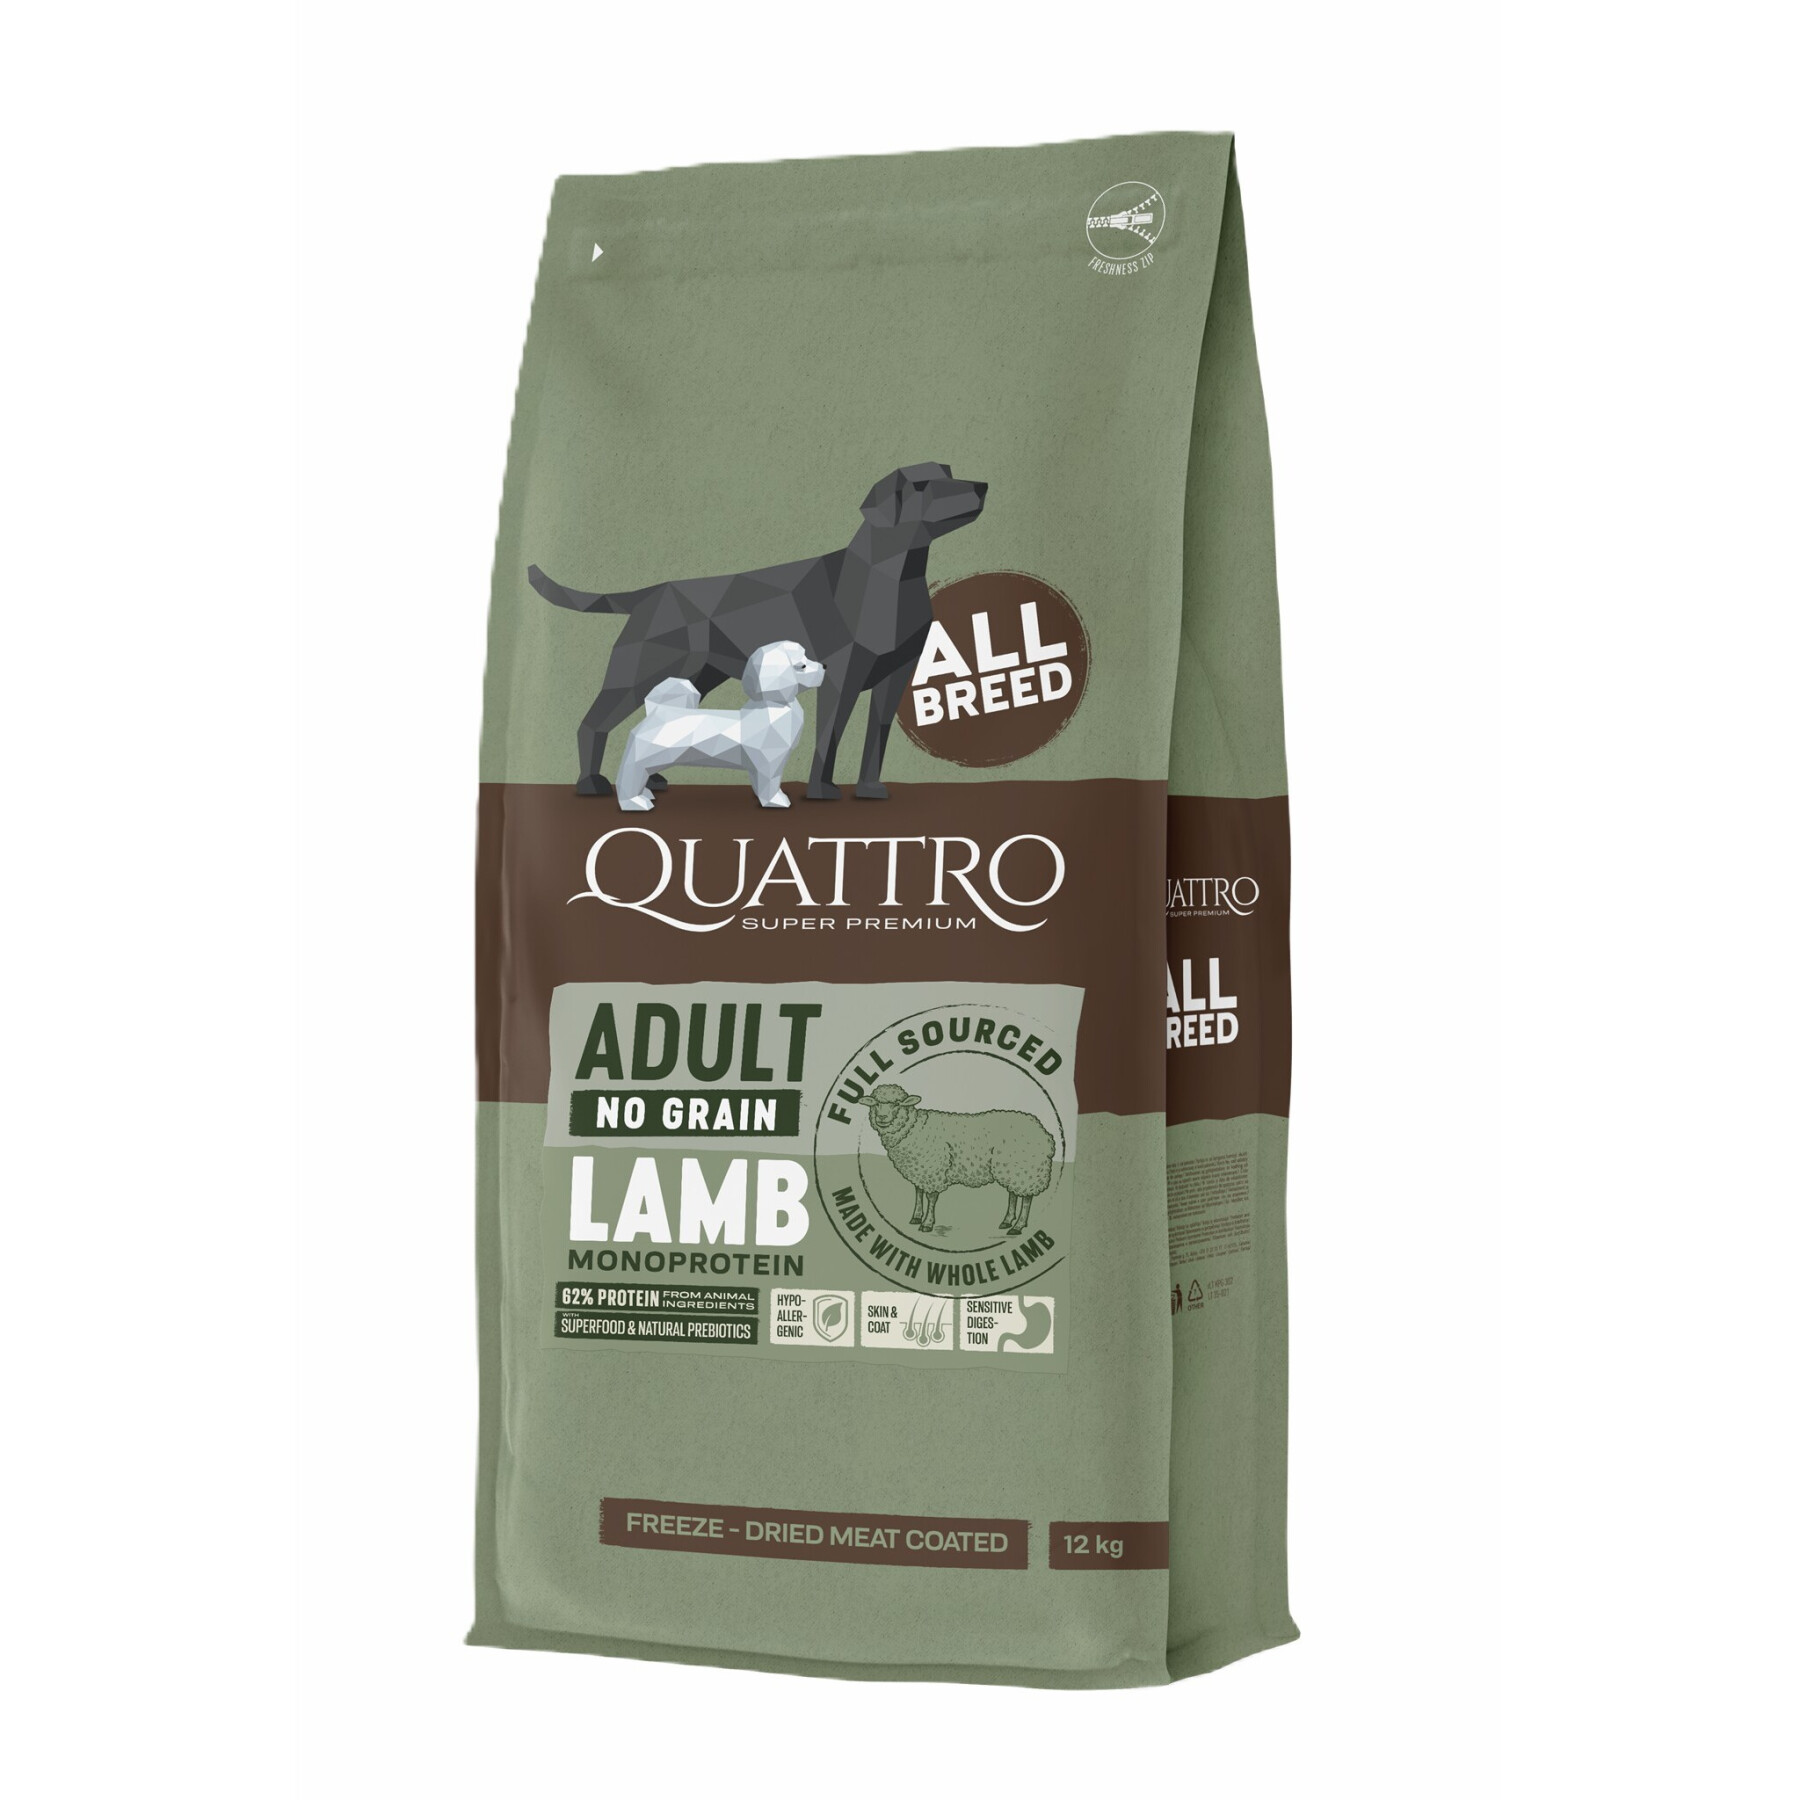 Hundekroketten für alle Rassen ohne ohne Getreide Lamm BUBU Pets Quatro Super Premium